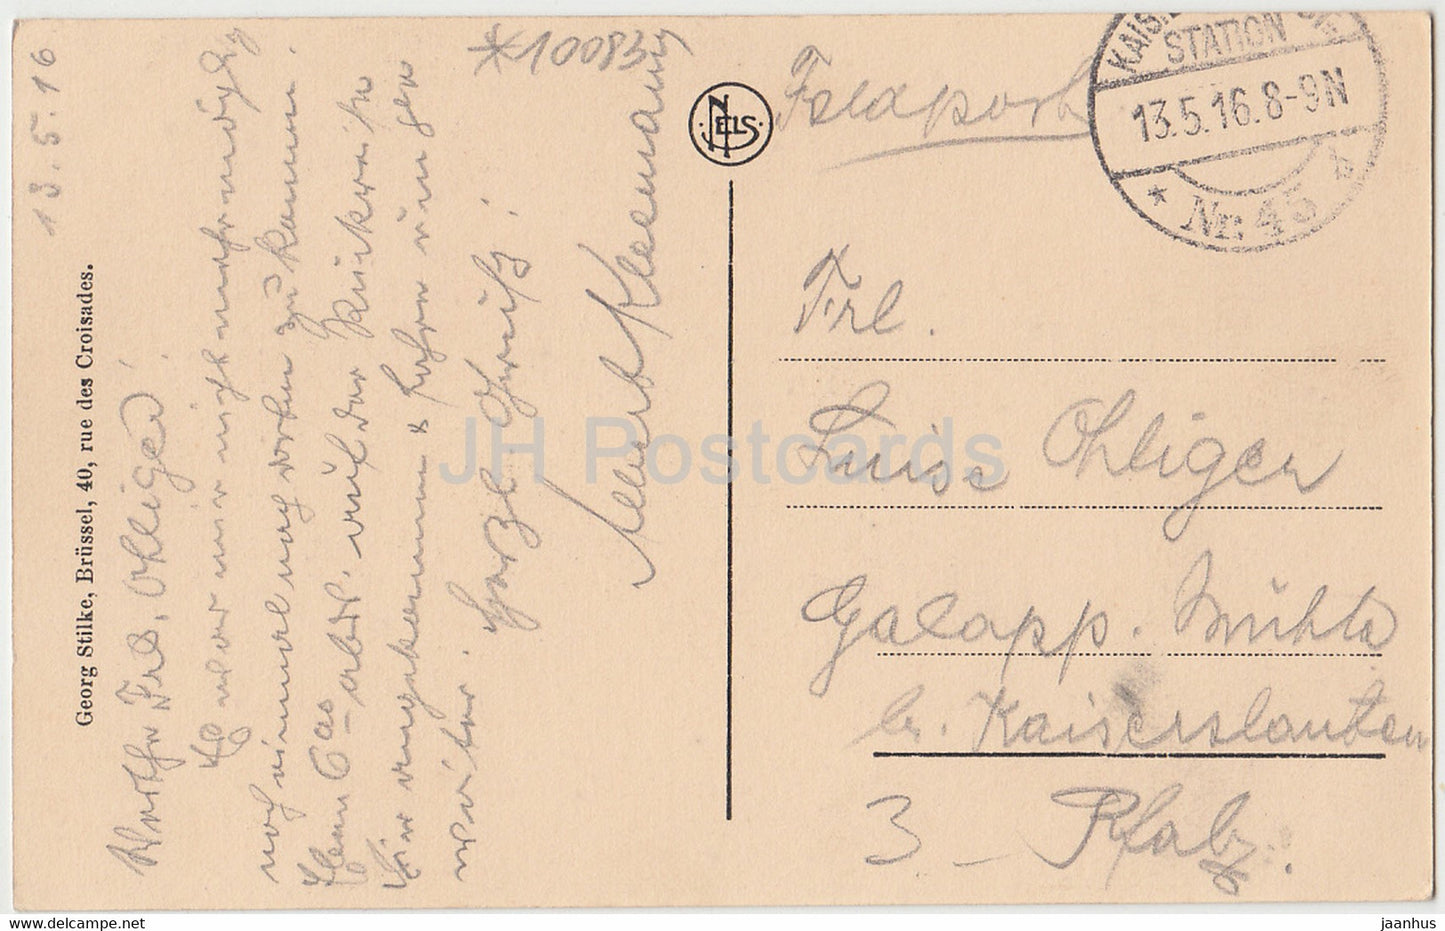 Saint Quentin - Historische Windmuhle - moulin à vent - carte postale ancienne - 1916 - France - occasion